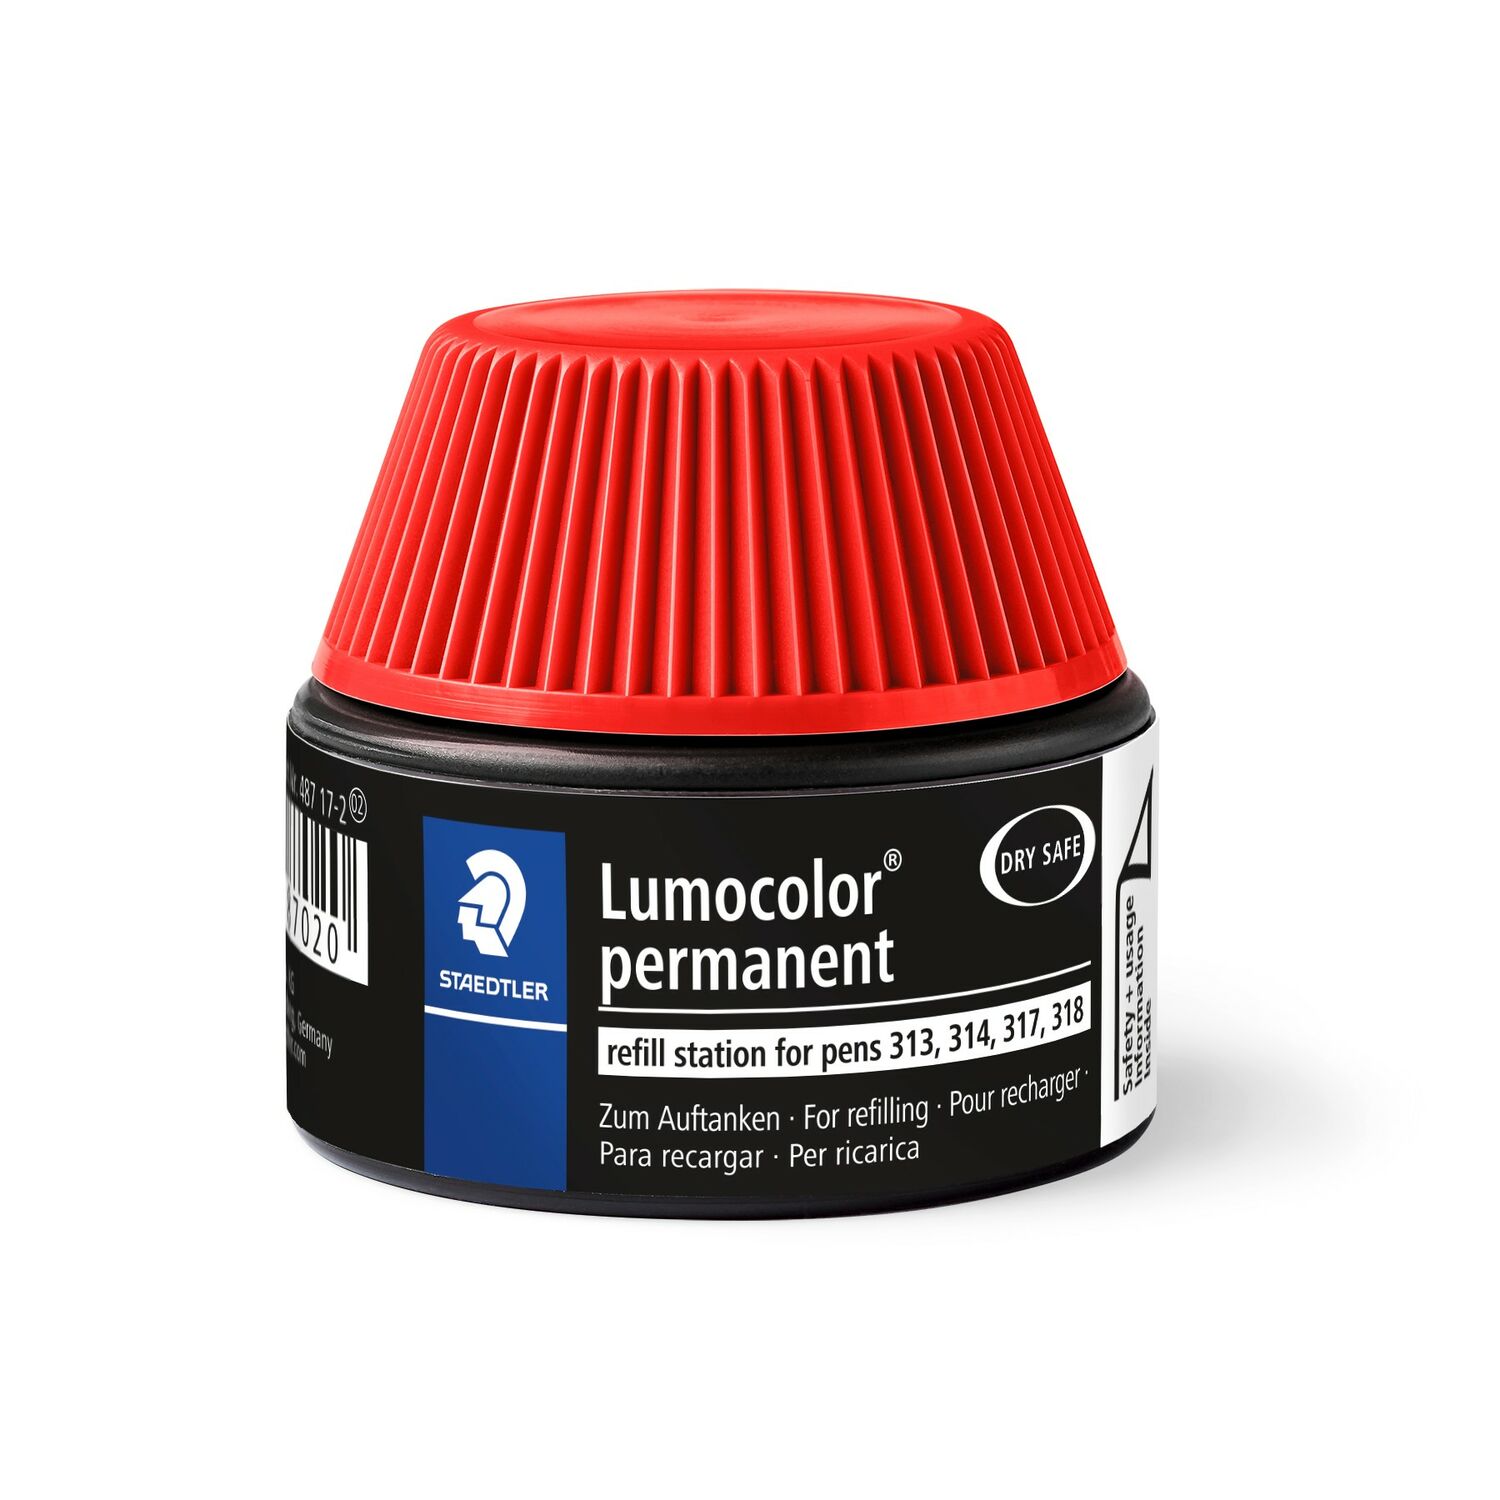 Lumocolor® permanent refill station 487 17 - Estação de recarga para enchimento das canetas Lumocolor permanentes